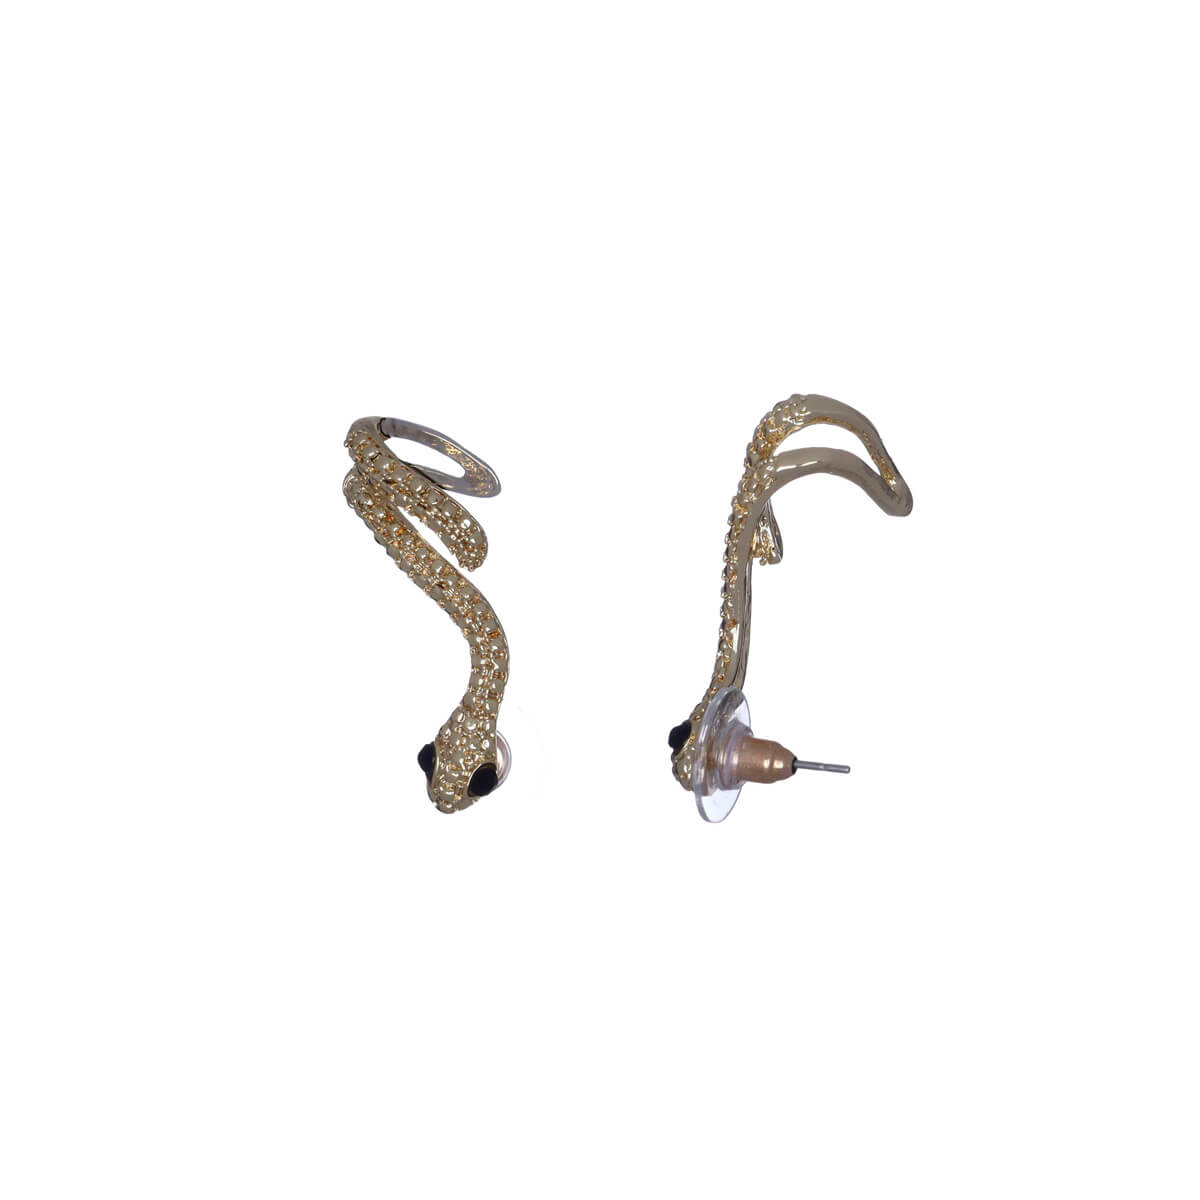 Hanging snake earrings